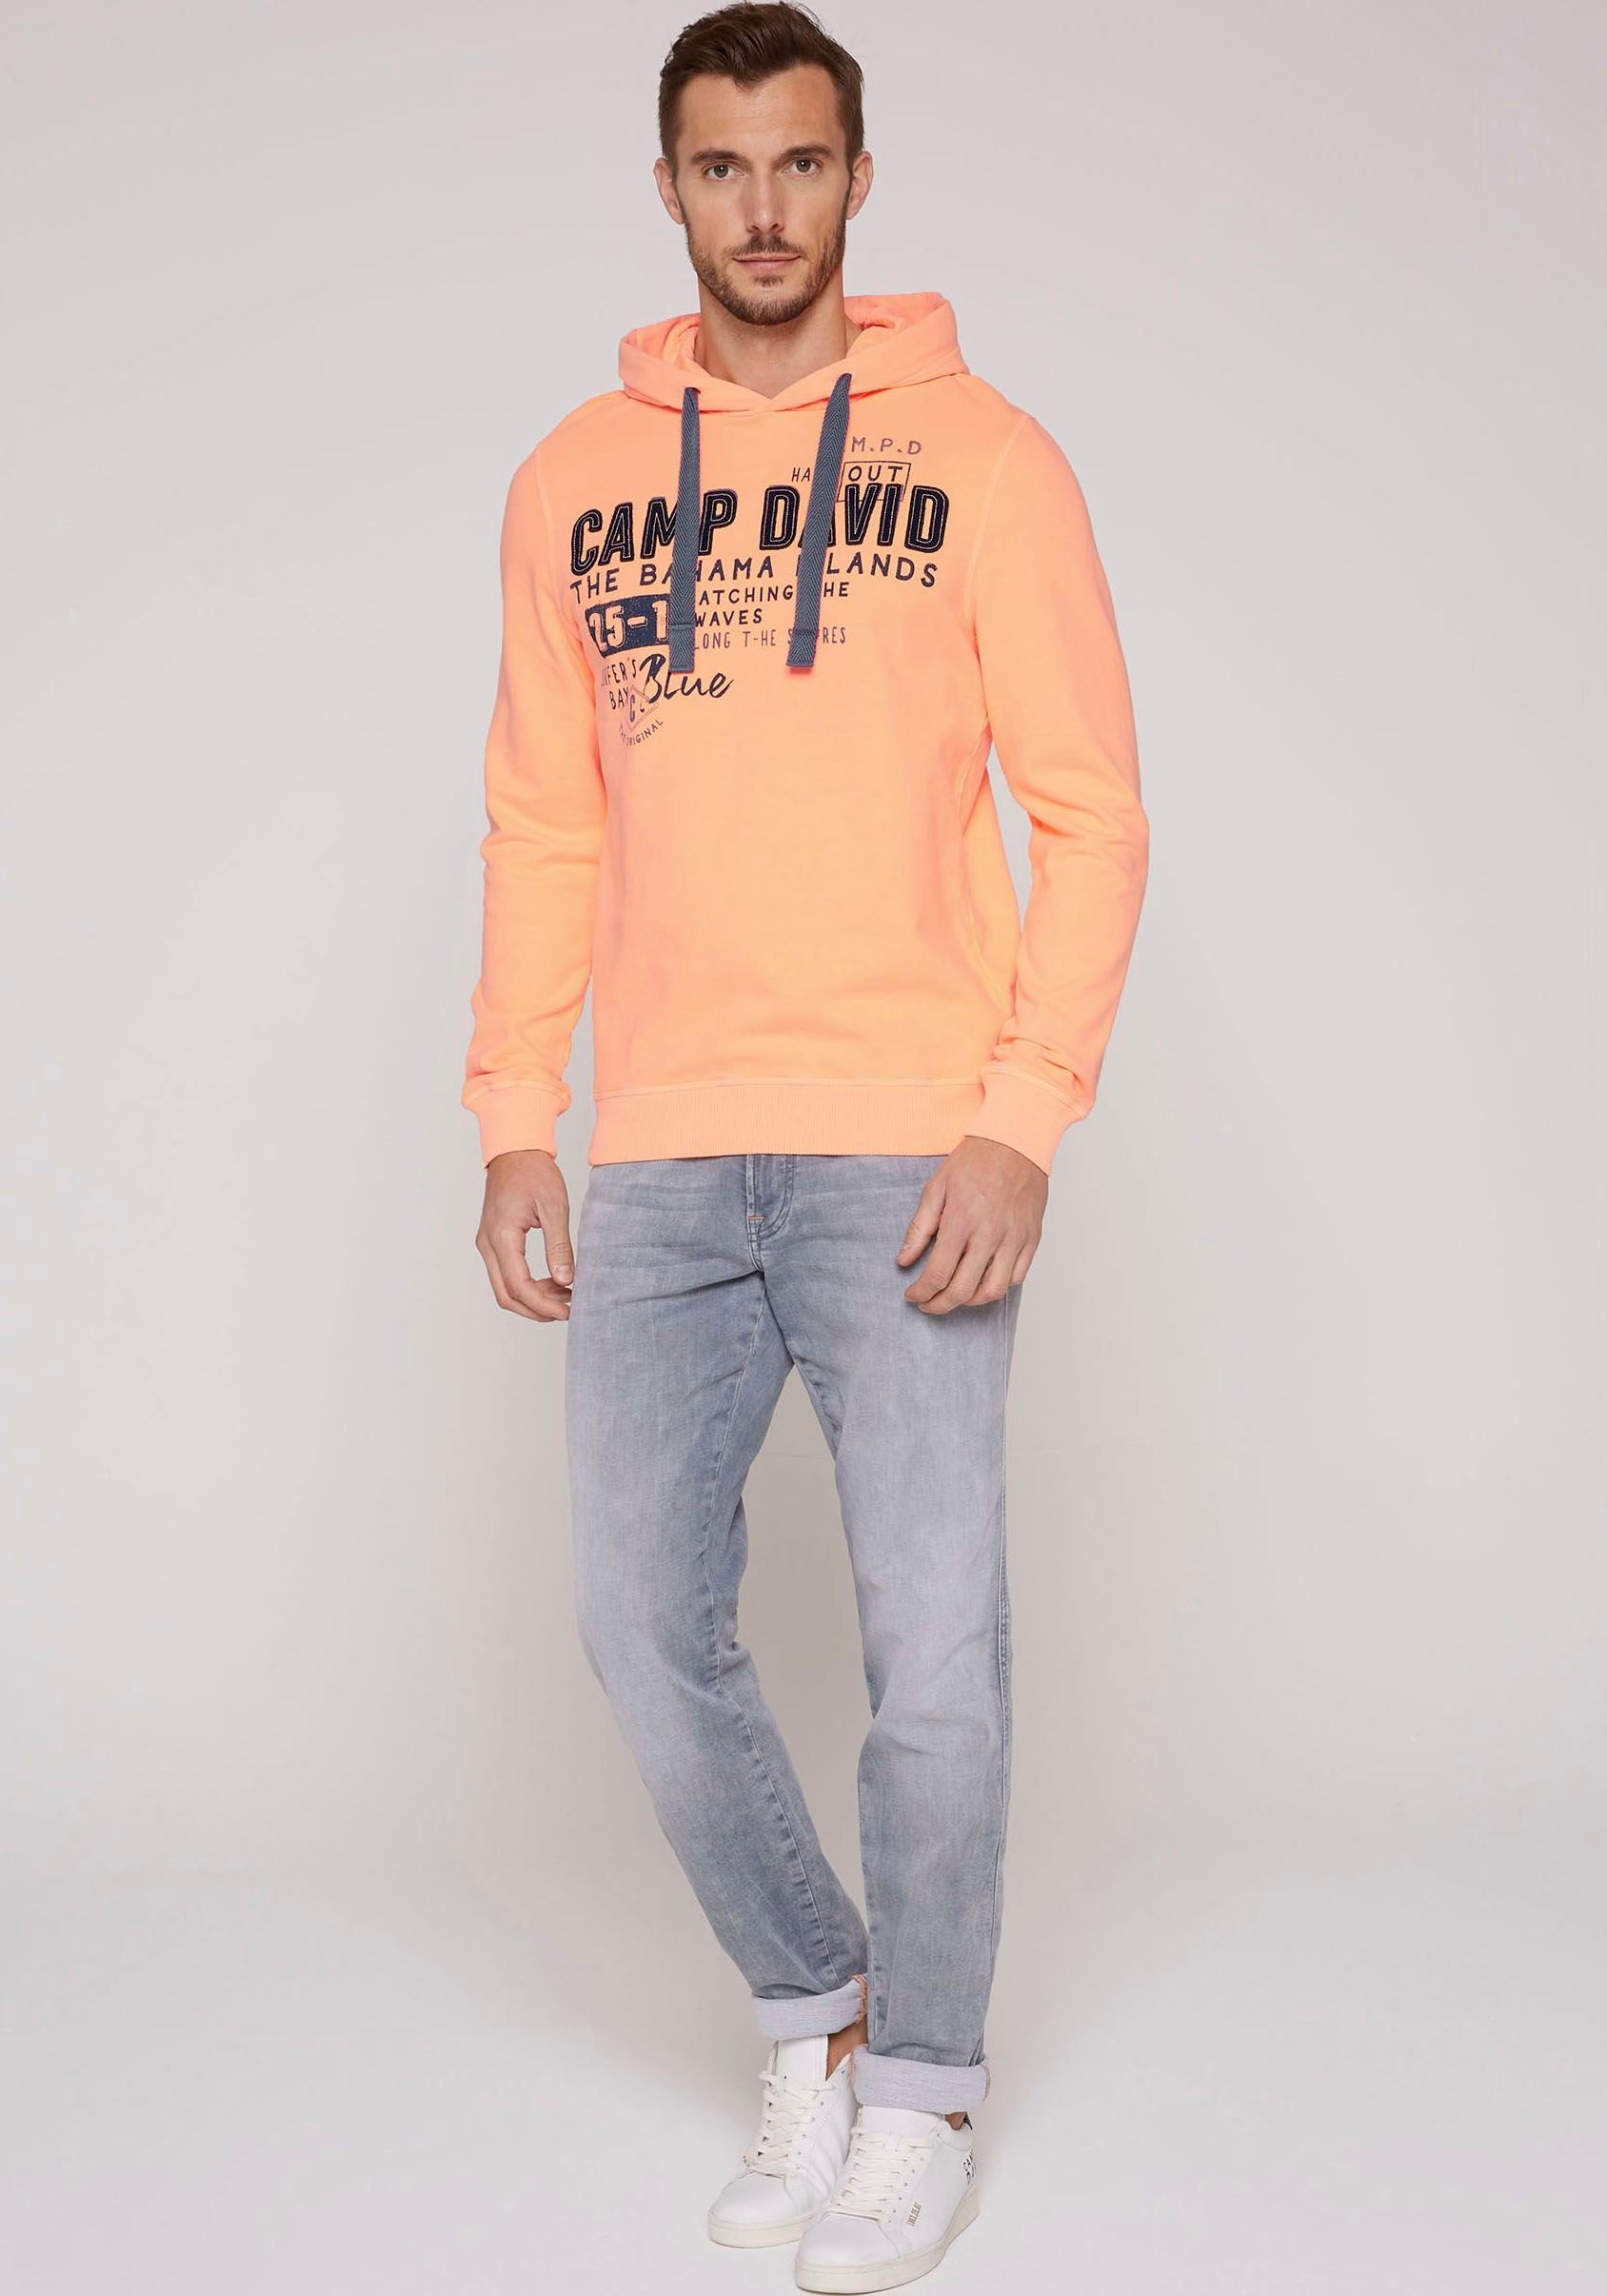 CAMP DAVID Kapuzensweatshirt mit sunset neon Schriftzügen